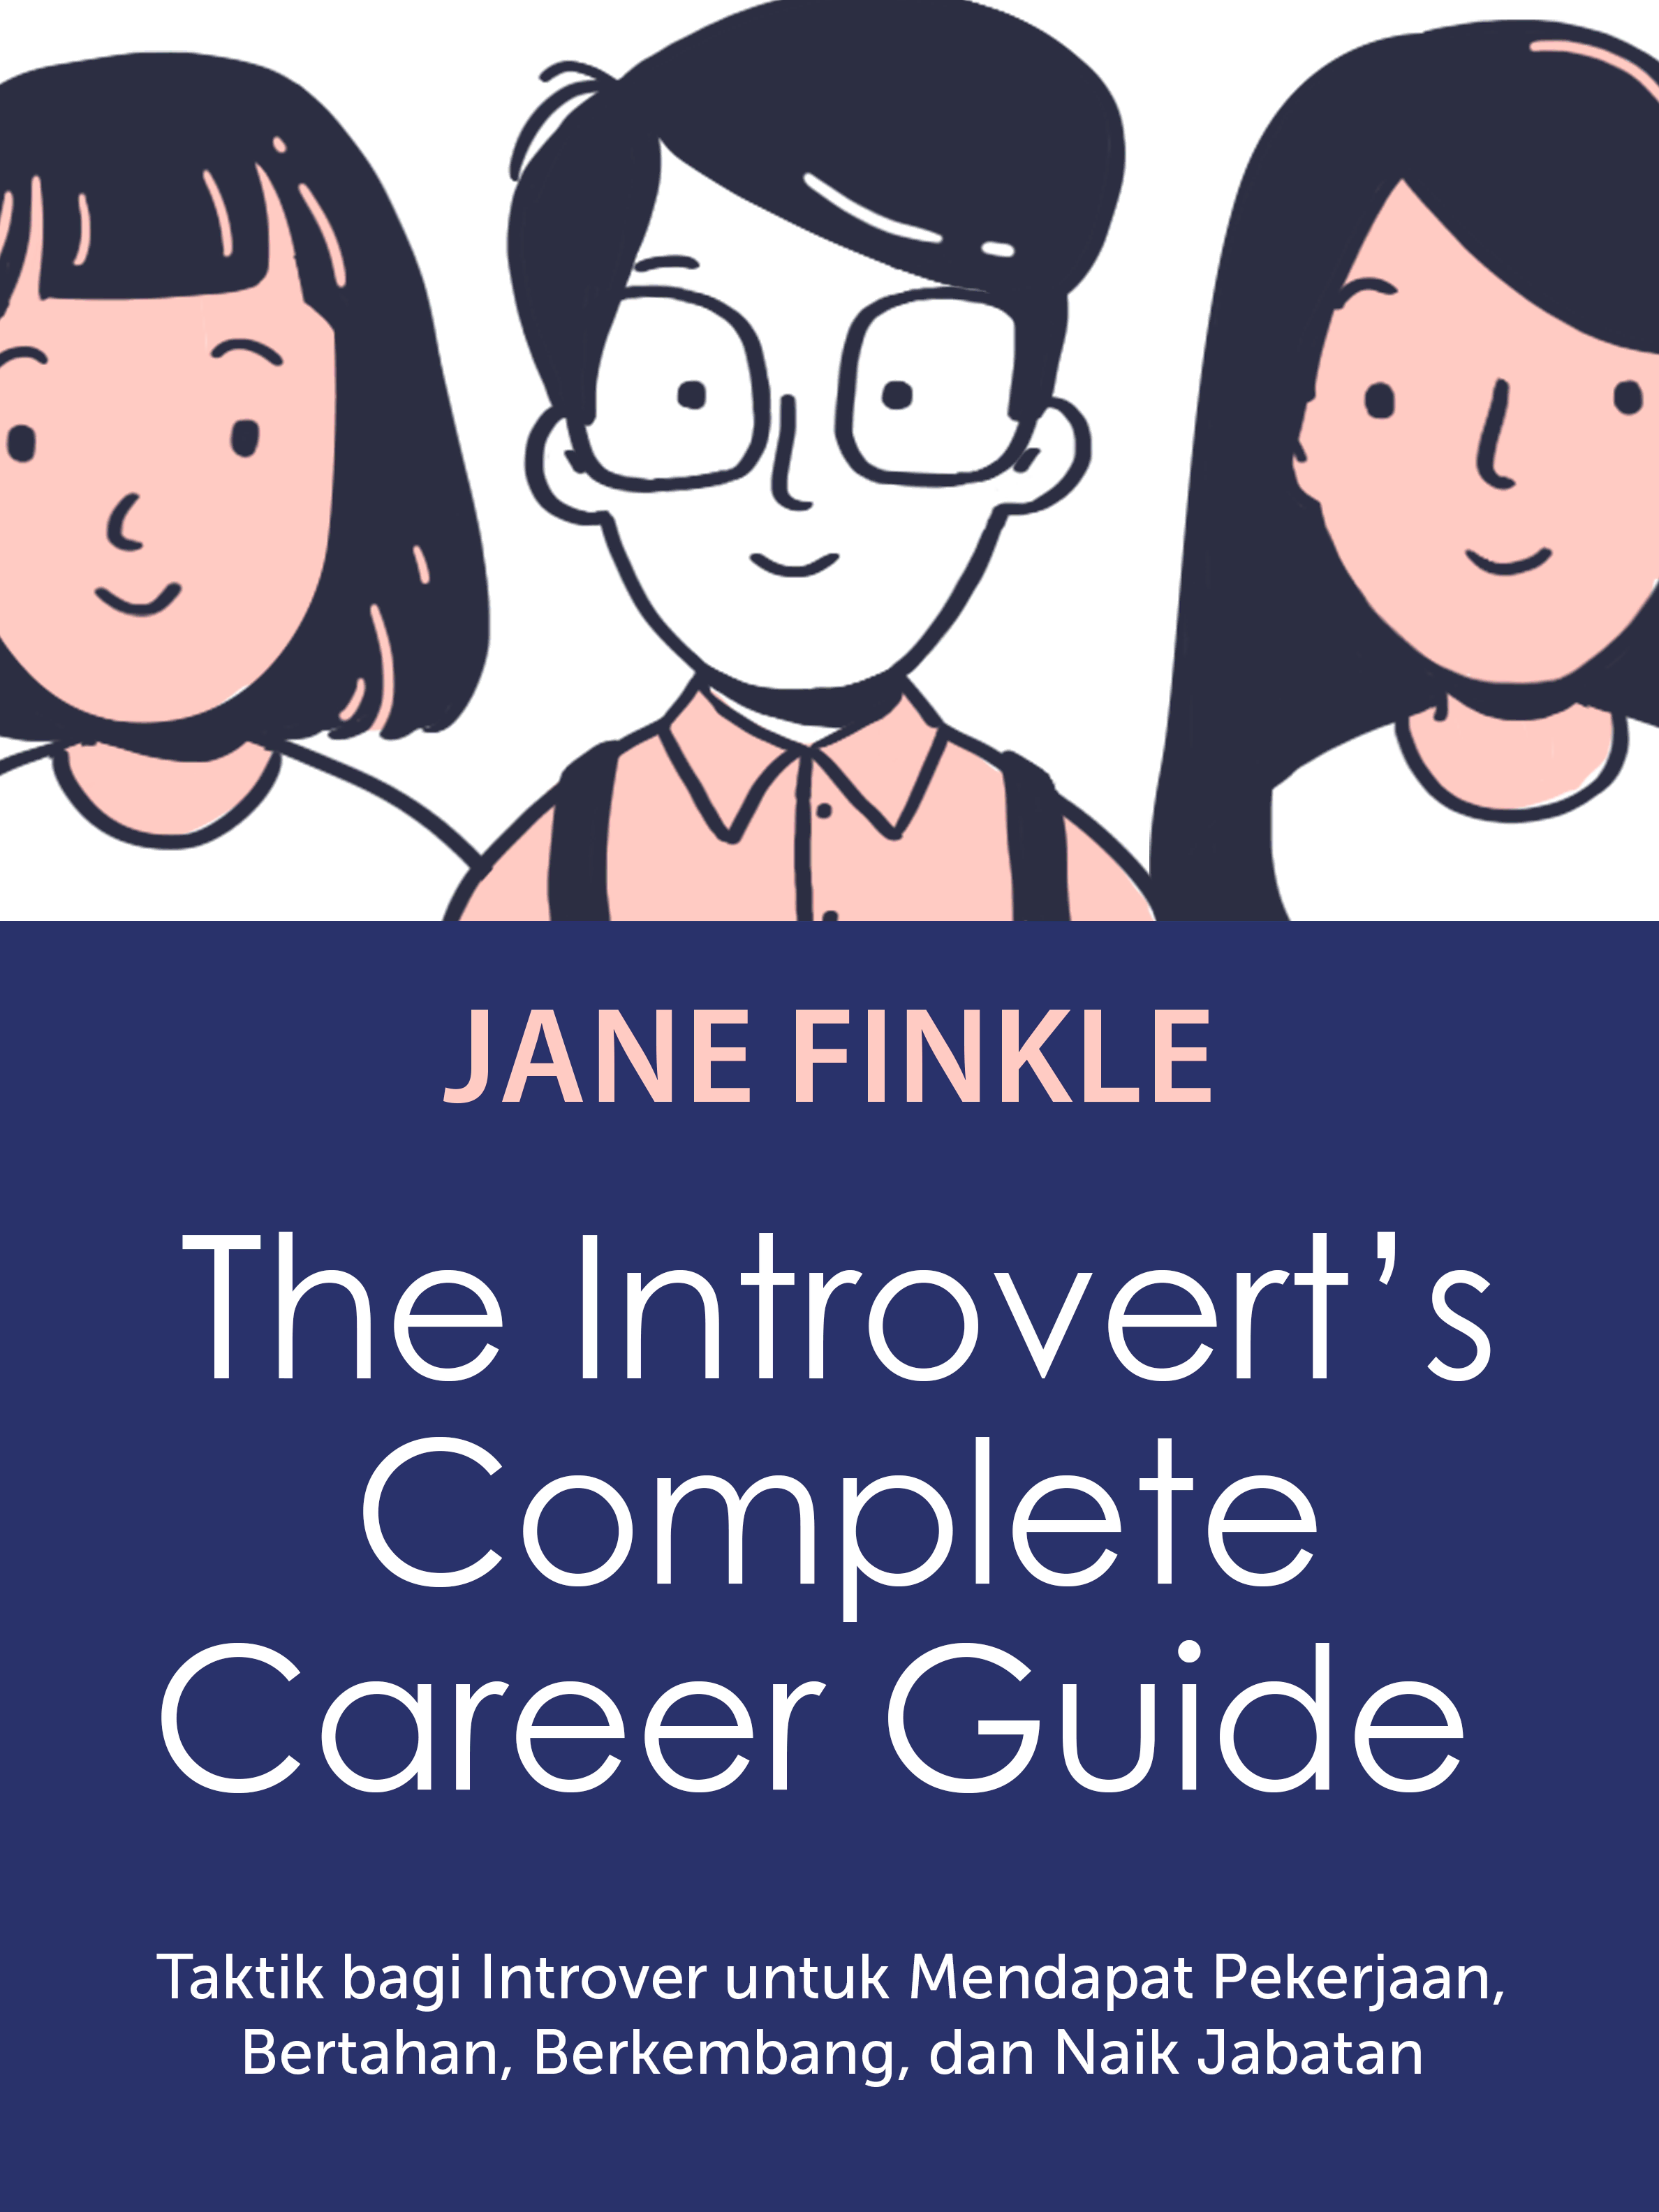 #9 Untuk menjaga karirmu, kamu harus belajar untuk menonjol di kantor yang didominasi oleh ekstrovert